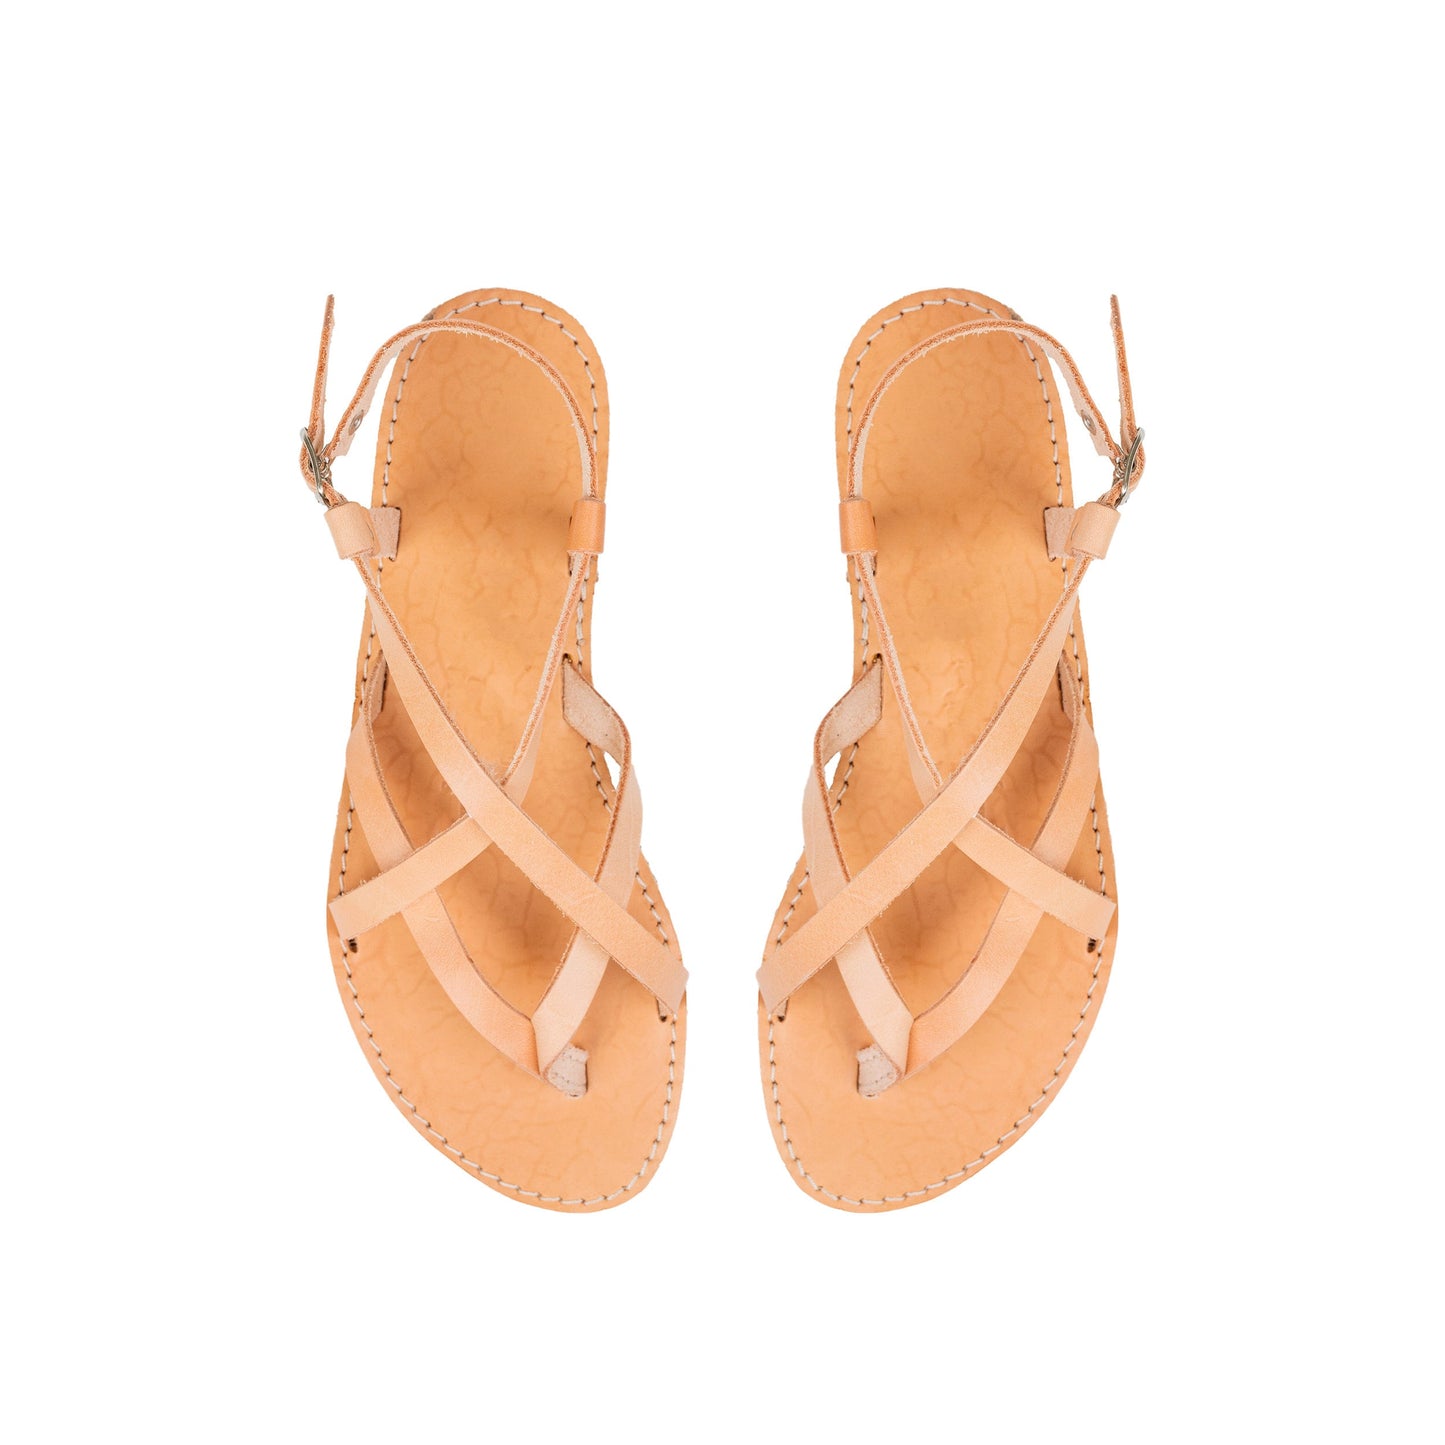 Greek sandals women leather, Minimalist leather strappy sandals flat, Slingback leather sandals for women